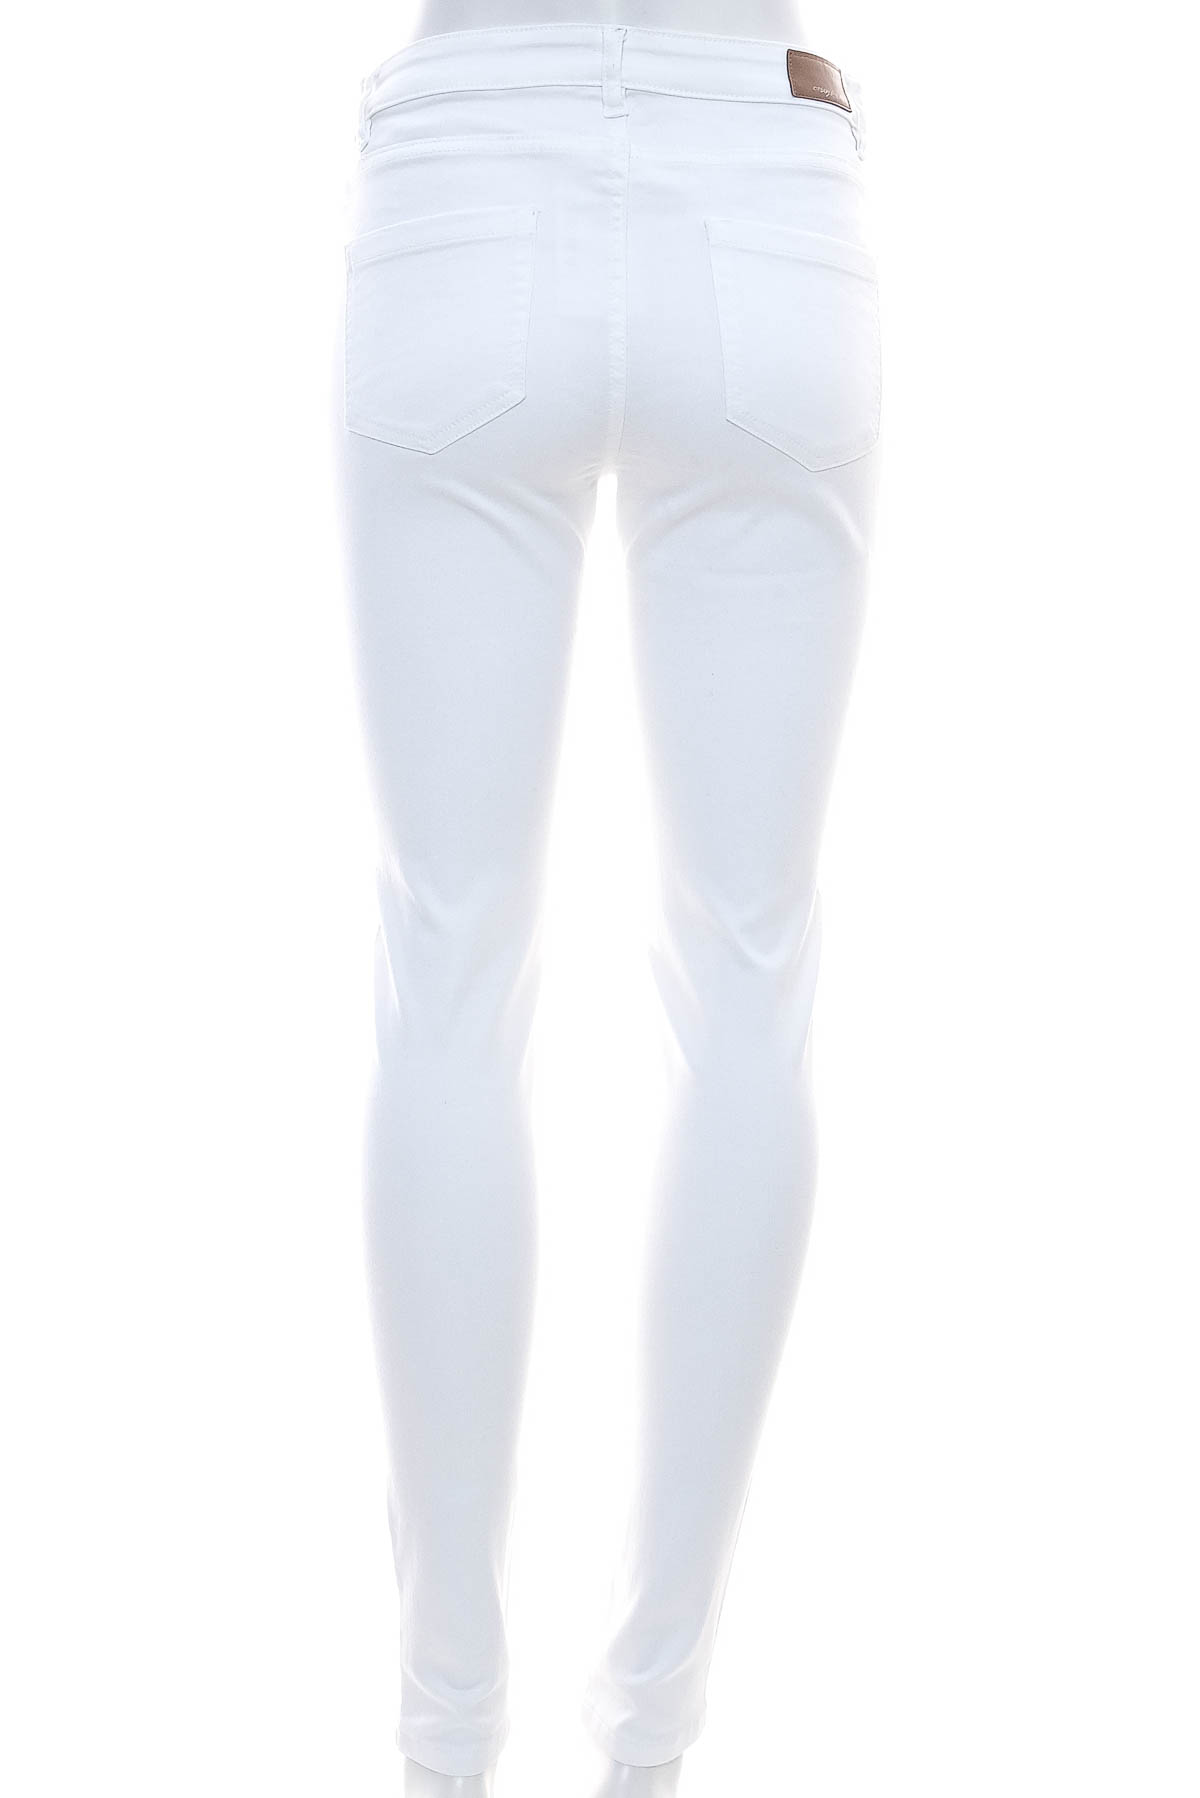 Spodnie damskie - Orsay - 1